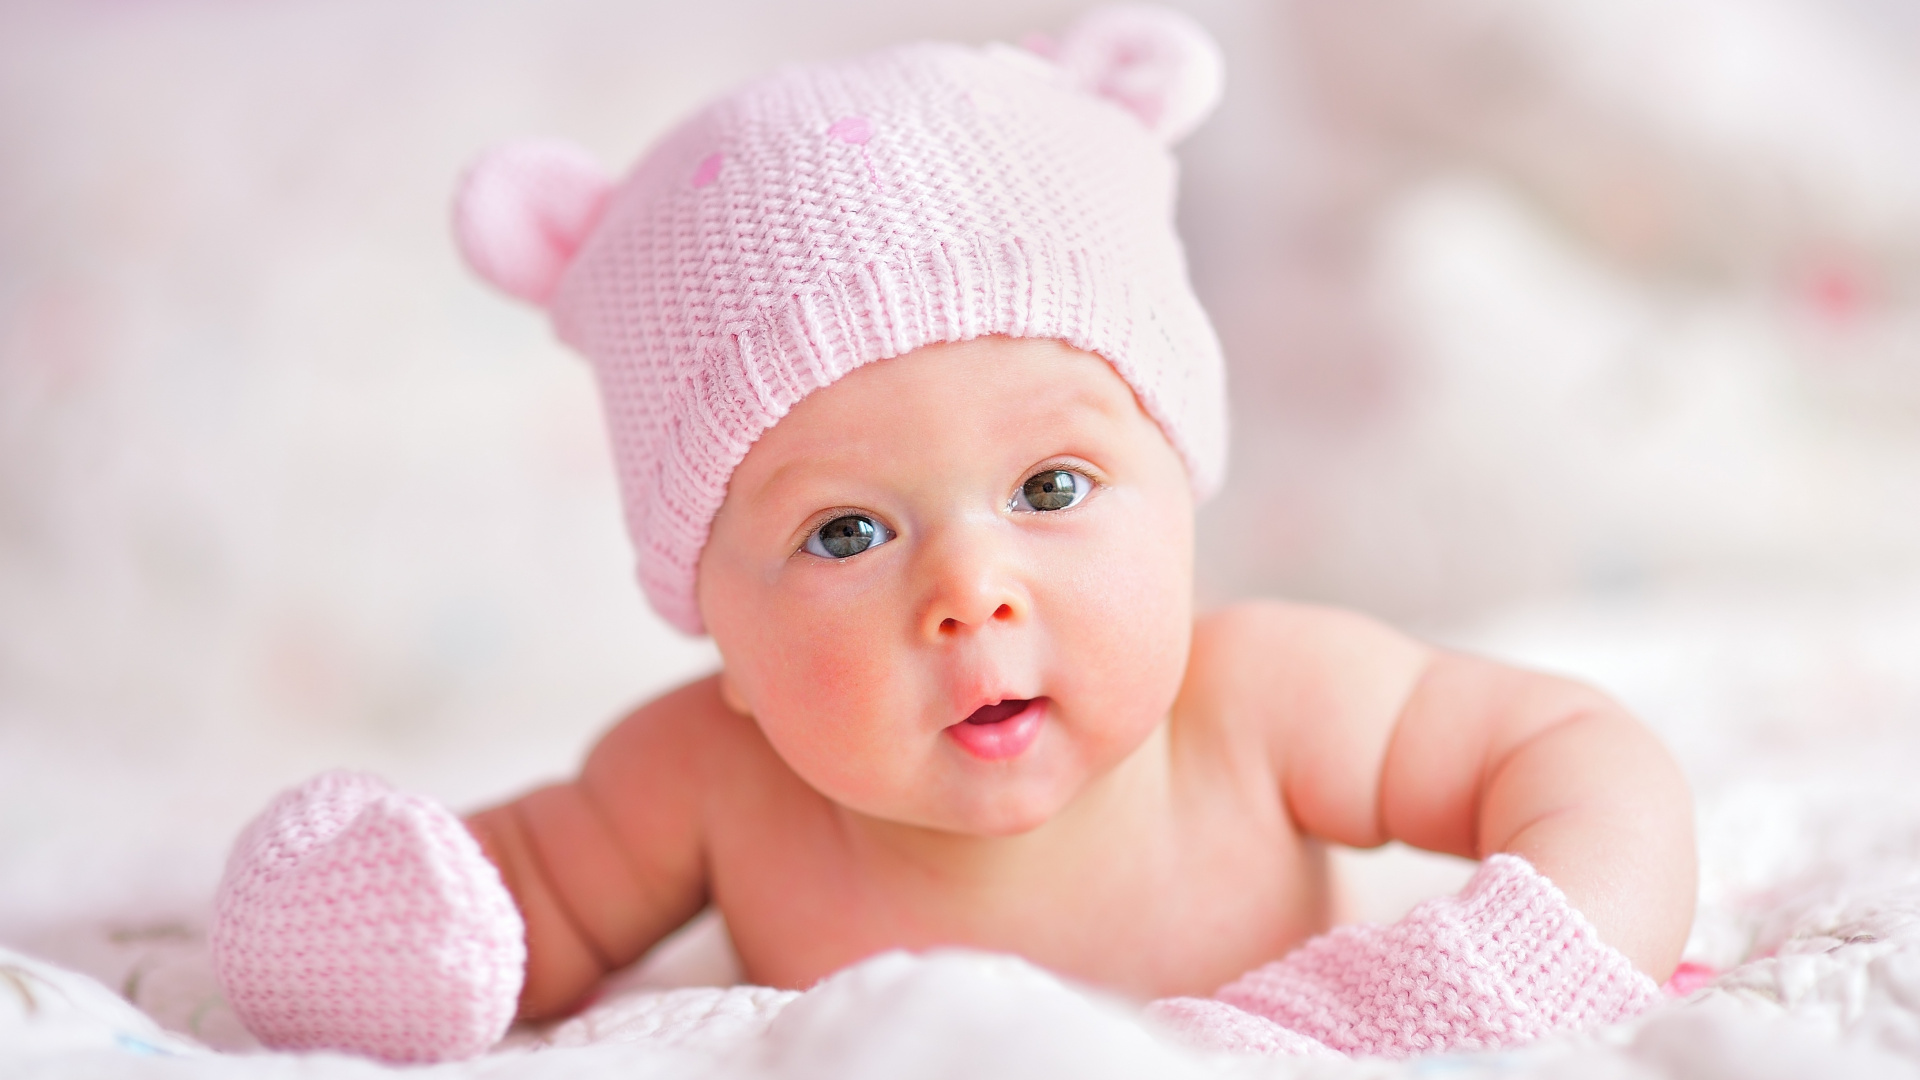 婴儿, 儿童, 粉红色, 皮肤, 女孩 壁纸 1920x1080 允许